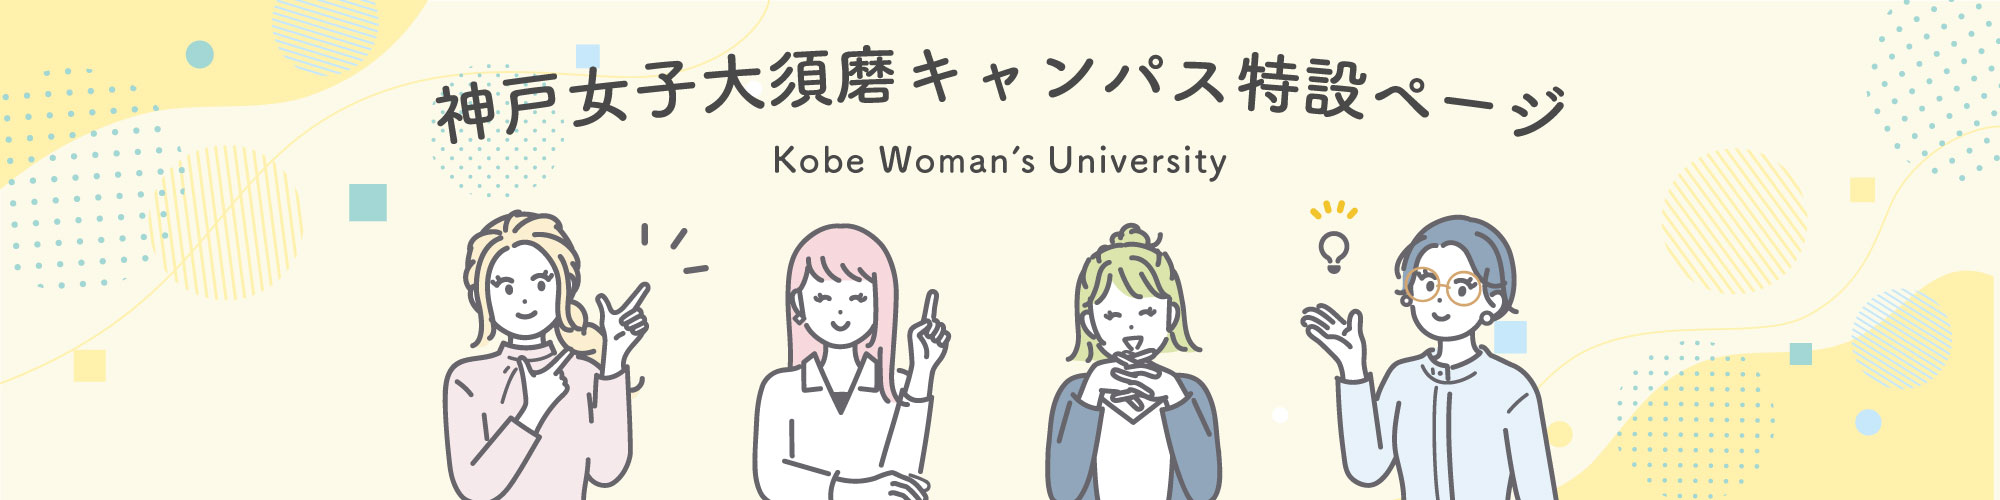 神戸女子大学須磨キャンパス特設ページ